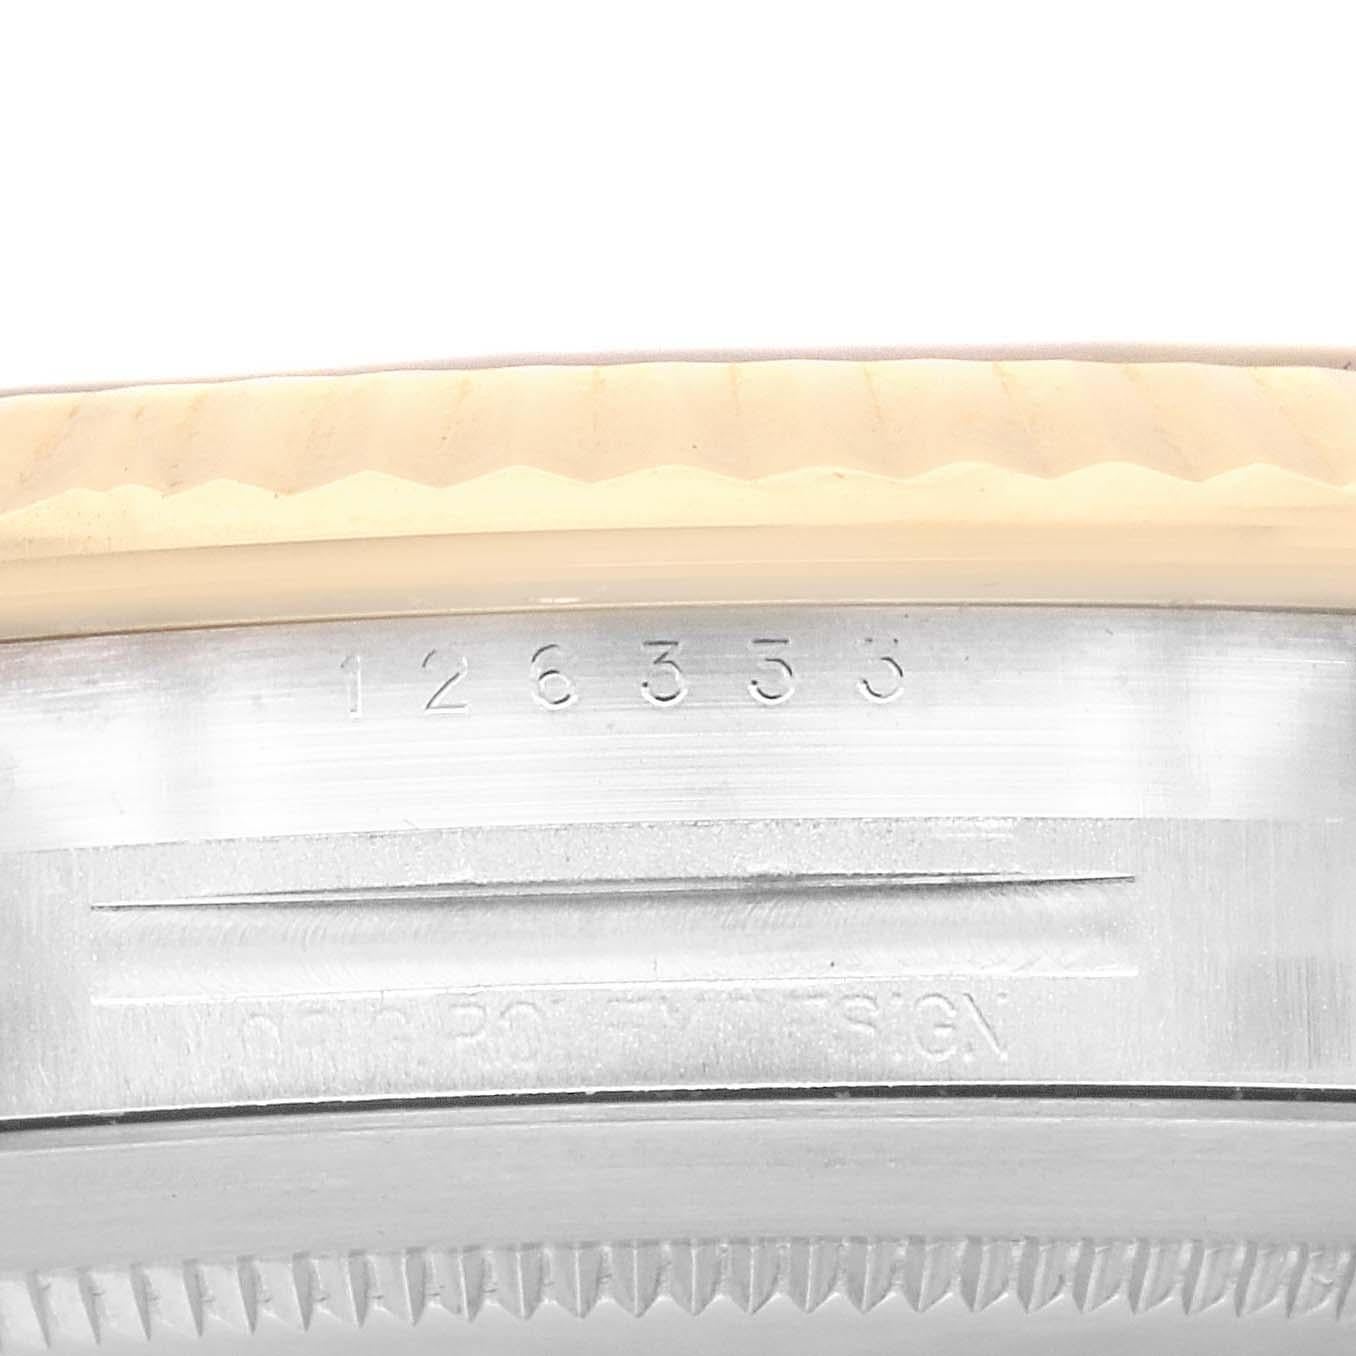 Rolex Datejust 41 Stahl Gelbgold Schwarzes Zifferblatt Herrenuhr 126333 Box Card. Offiziell zertifiziertes Chronometer-Automatikwerk mit Schnellverstellung des Datums. Gehäuse aus Edelstahl und 18 Karat Gelbgold mit einem Durchmesser von 41 mm.